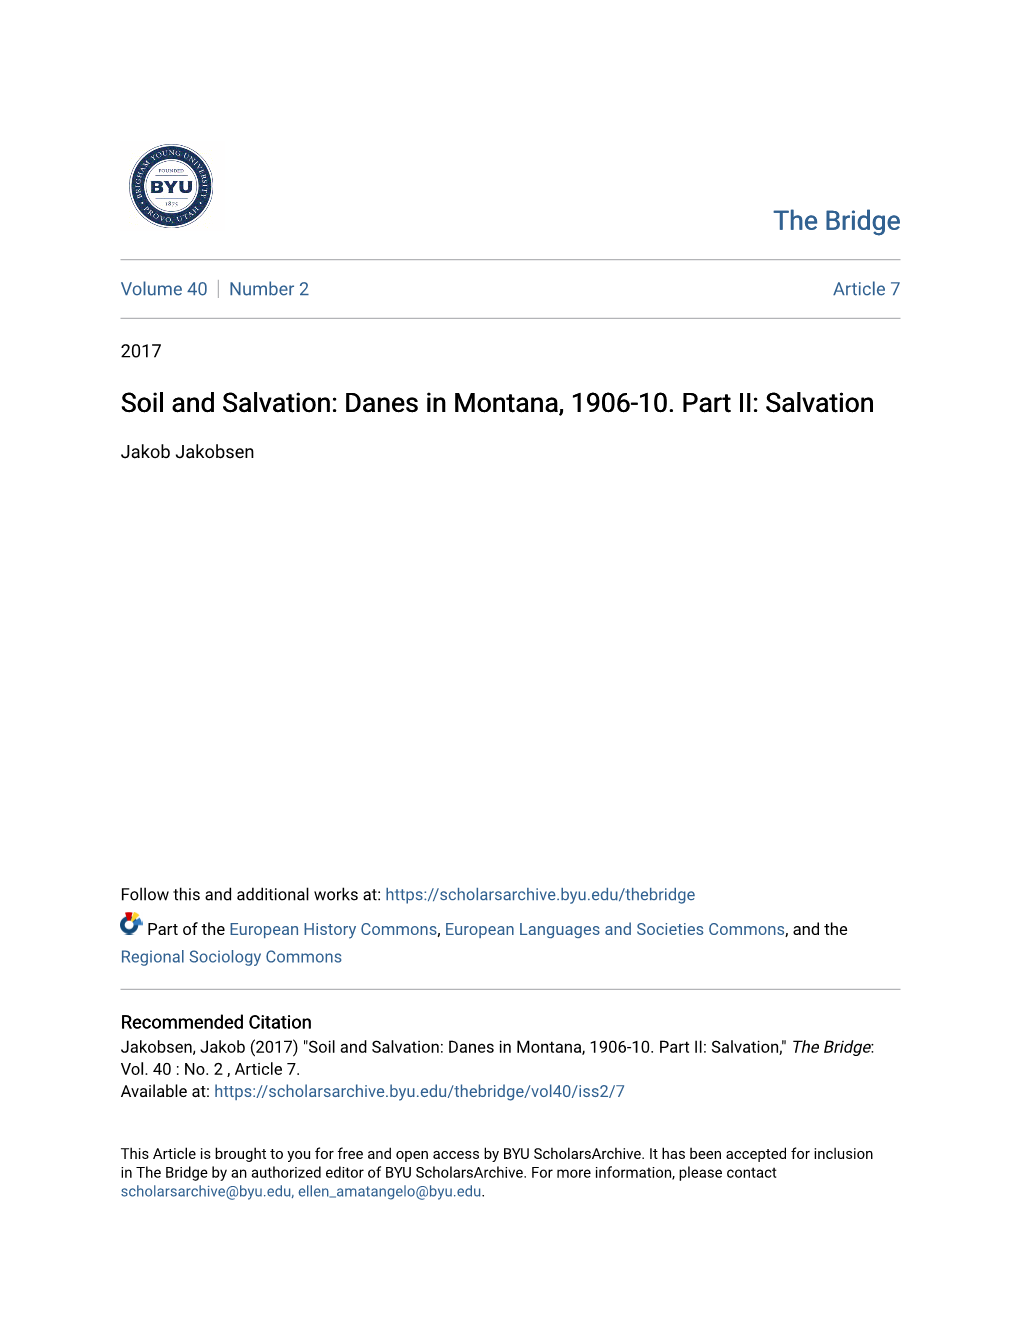 Danes in Montana, 1906-10. Part II: Salvation